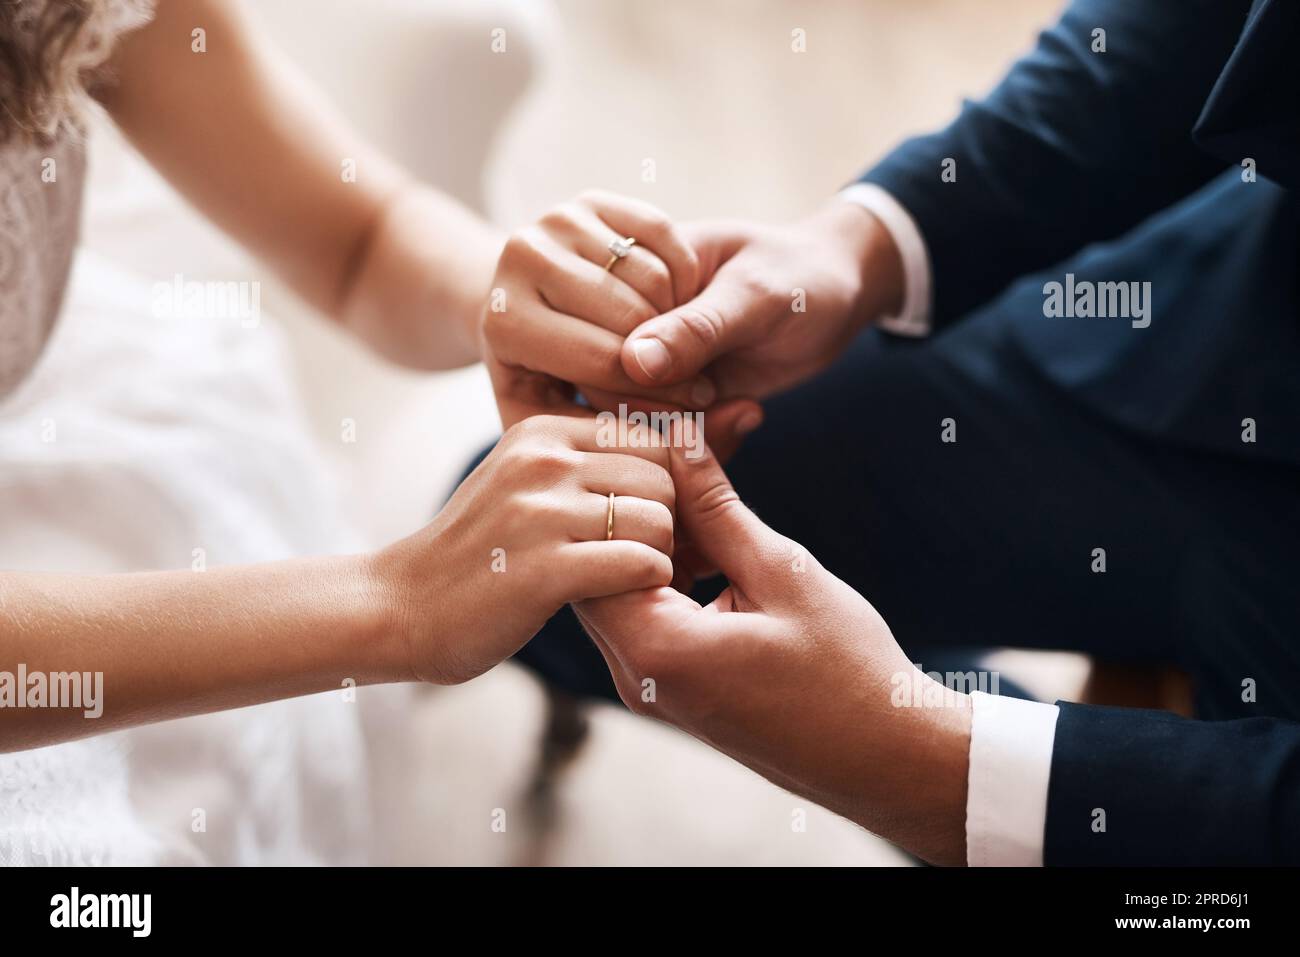 Sie sind mein heute und alle meine morgen. Ein unkenntlich frisch verheiratetes Paar, das nach ihrer Hochzeit liebevoll die Hände hält. Stockfoto